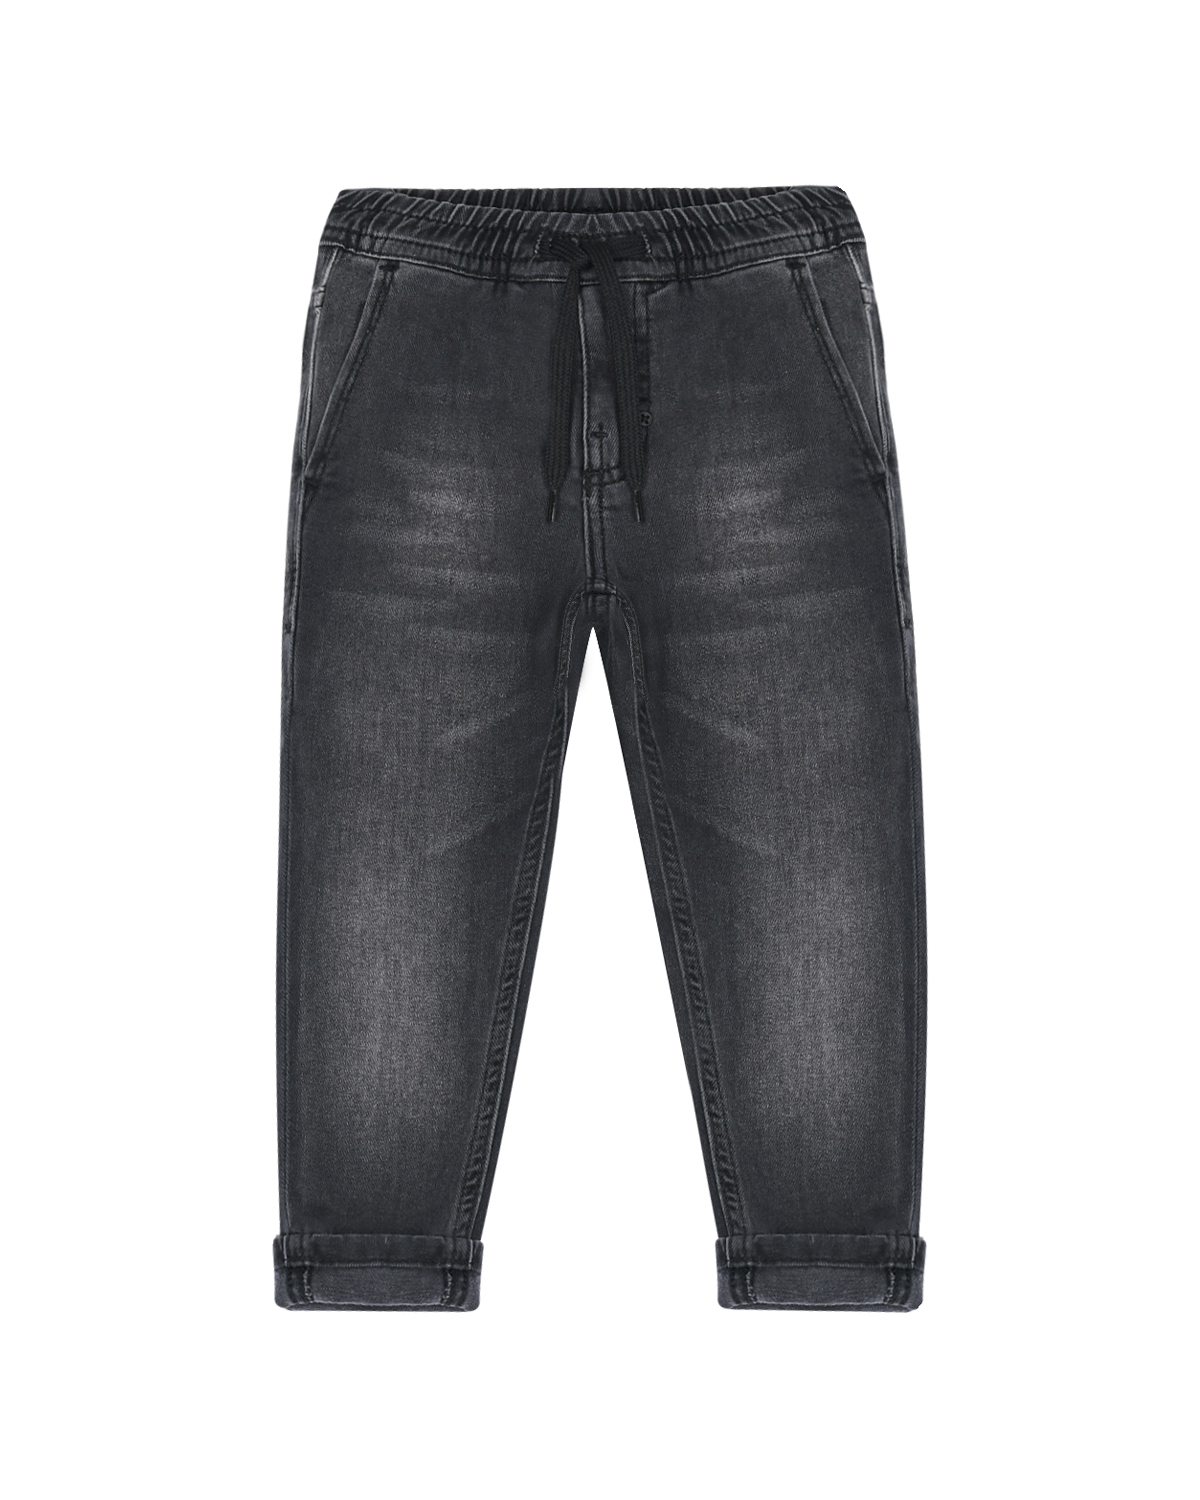 Черные джинсы с поясом на резинке Antony Morato детские